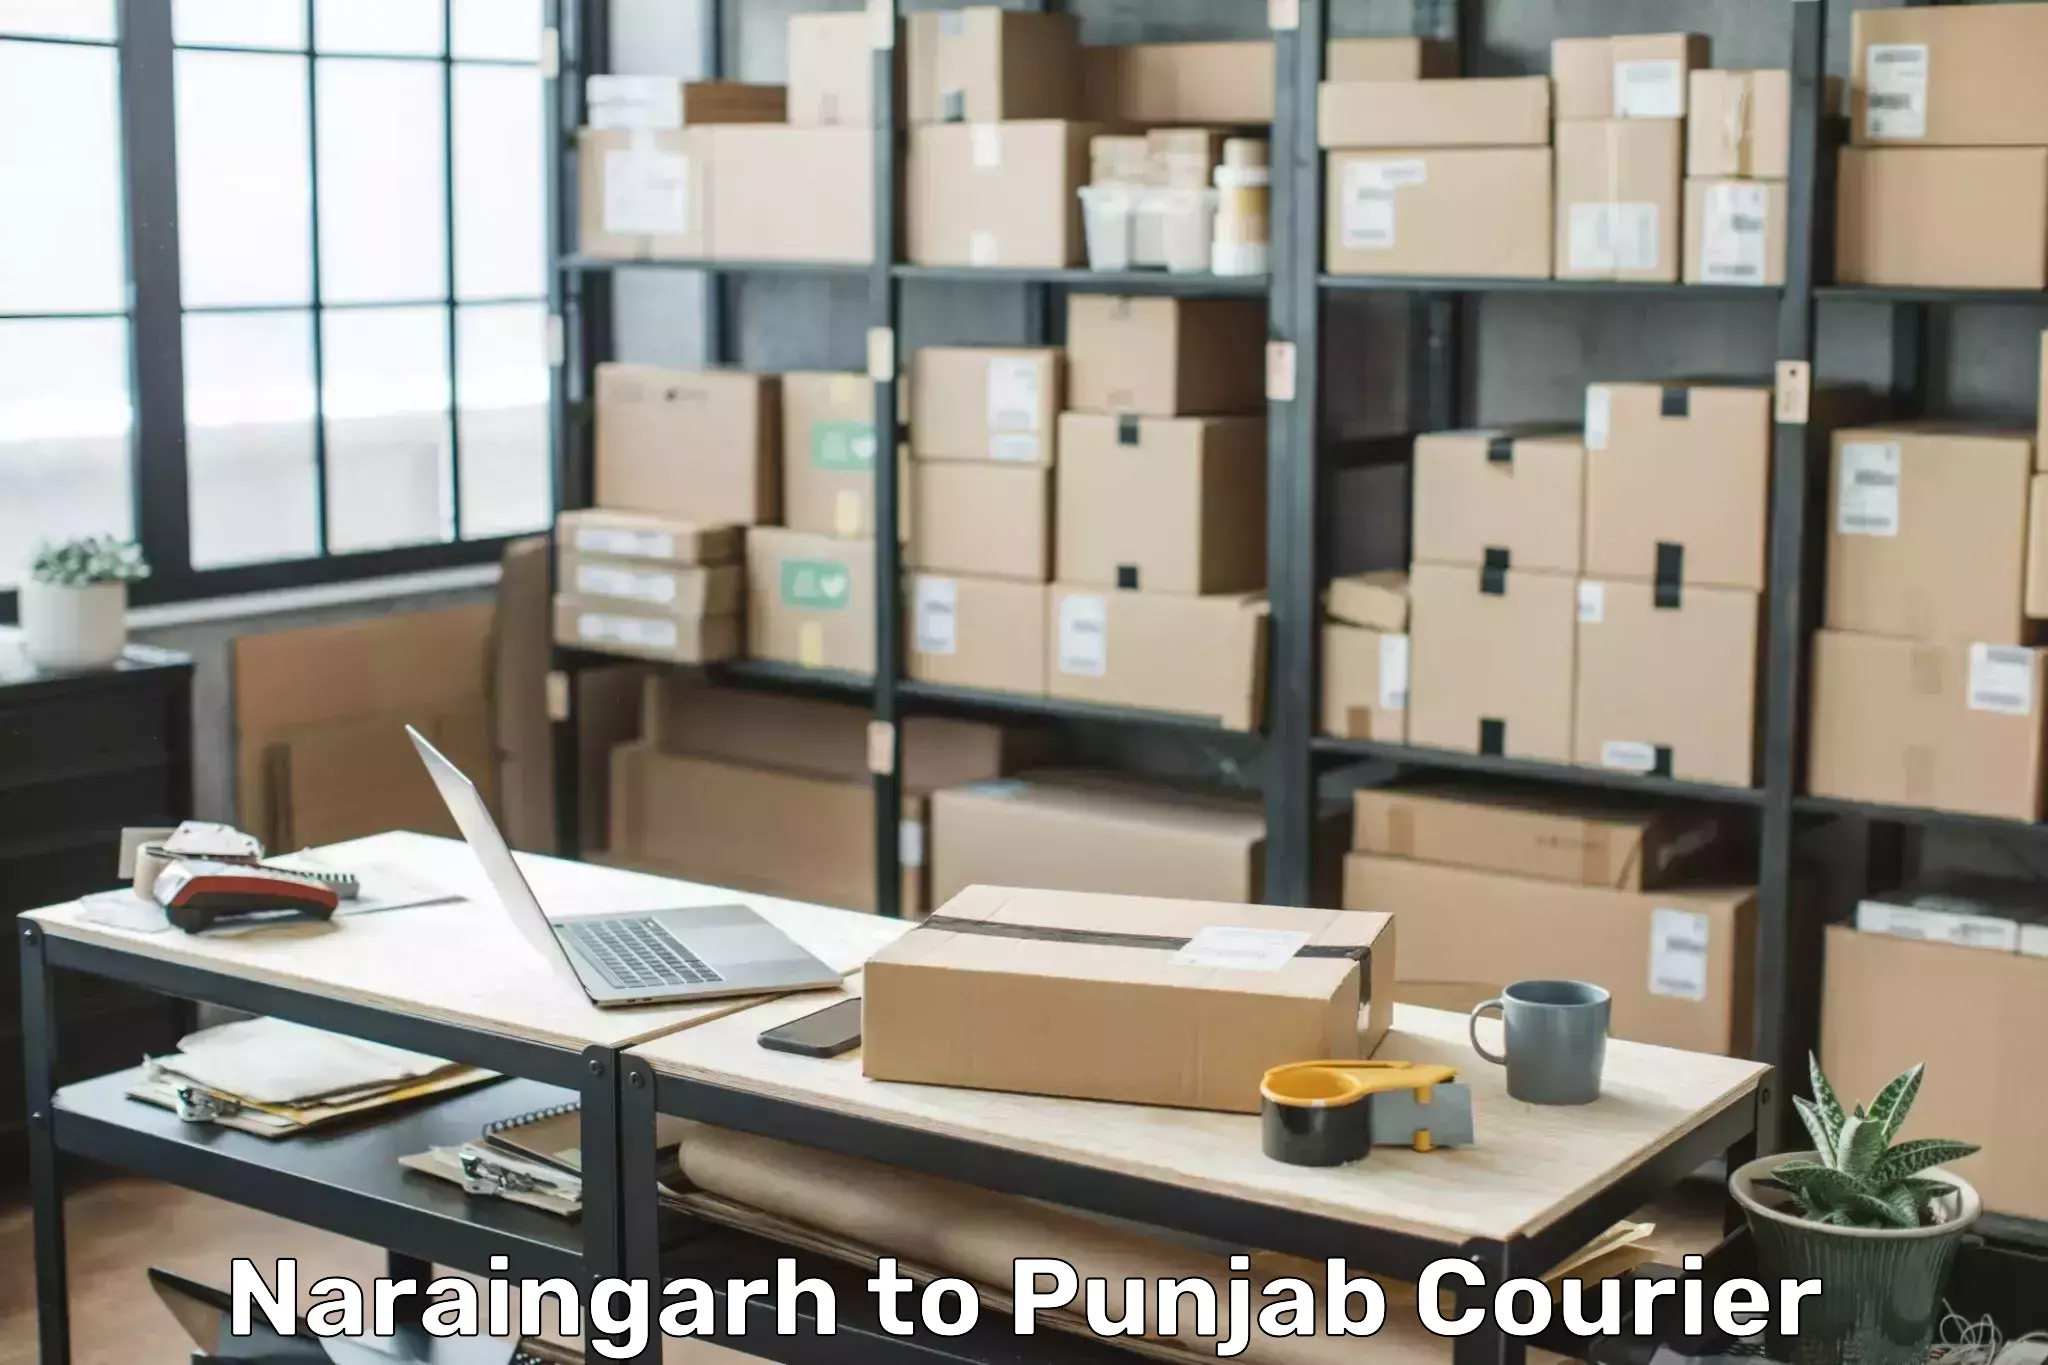 Luggage delivery app Naraingarh to Central University of Punjab Bathinda